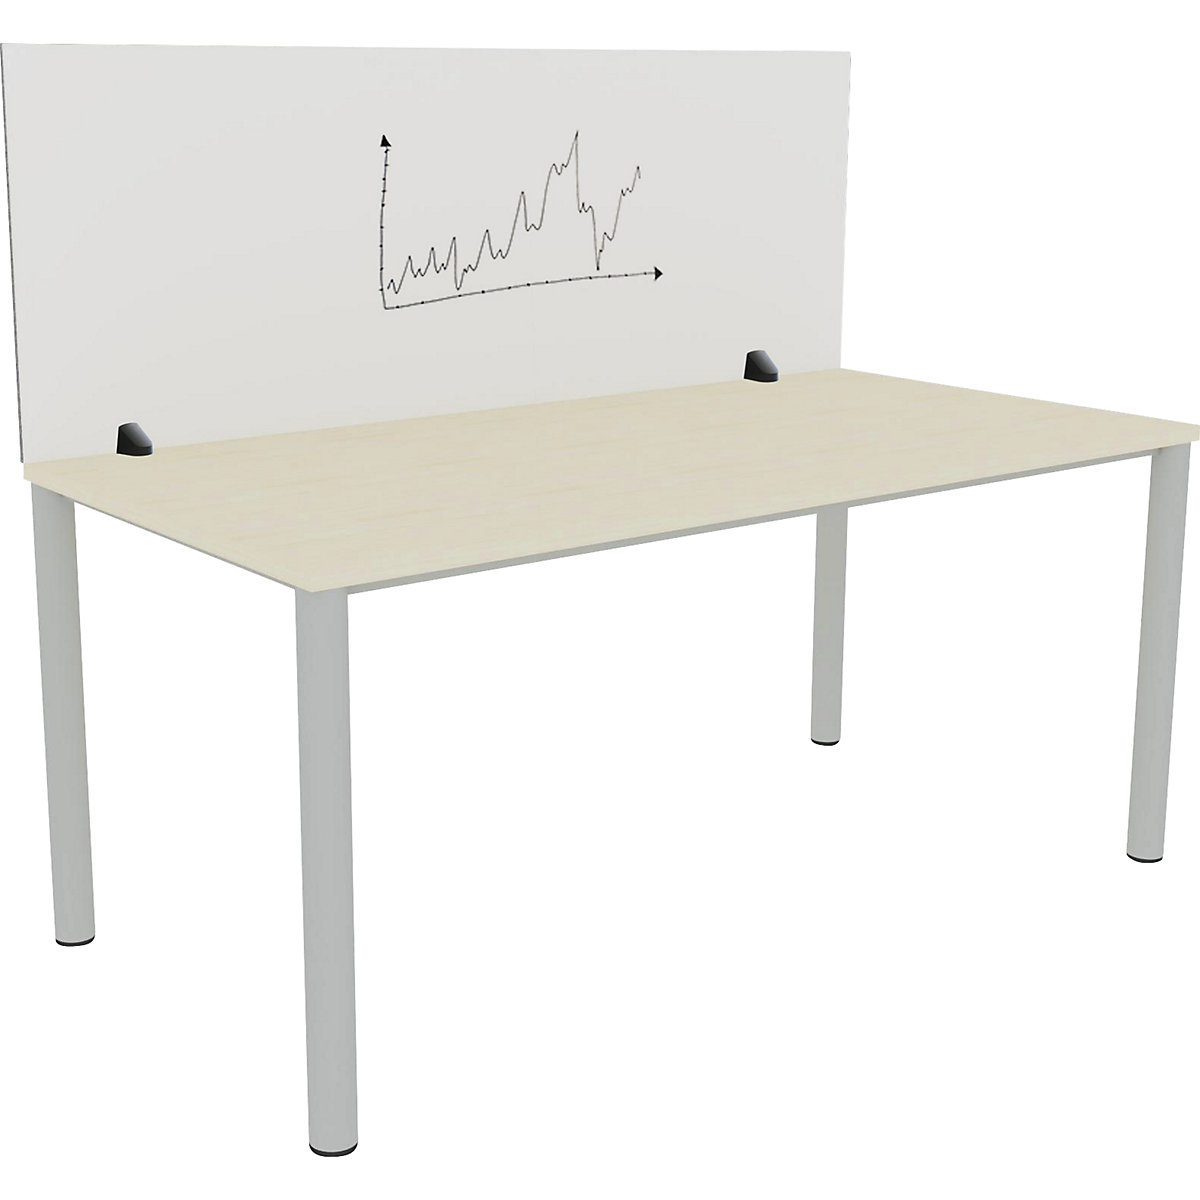 Tischtrennwand für Einzelarbeitsplatz, Emaille- und PET-Filz-Oberfläche, weiß / grau, Breite 1600 mm-11